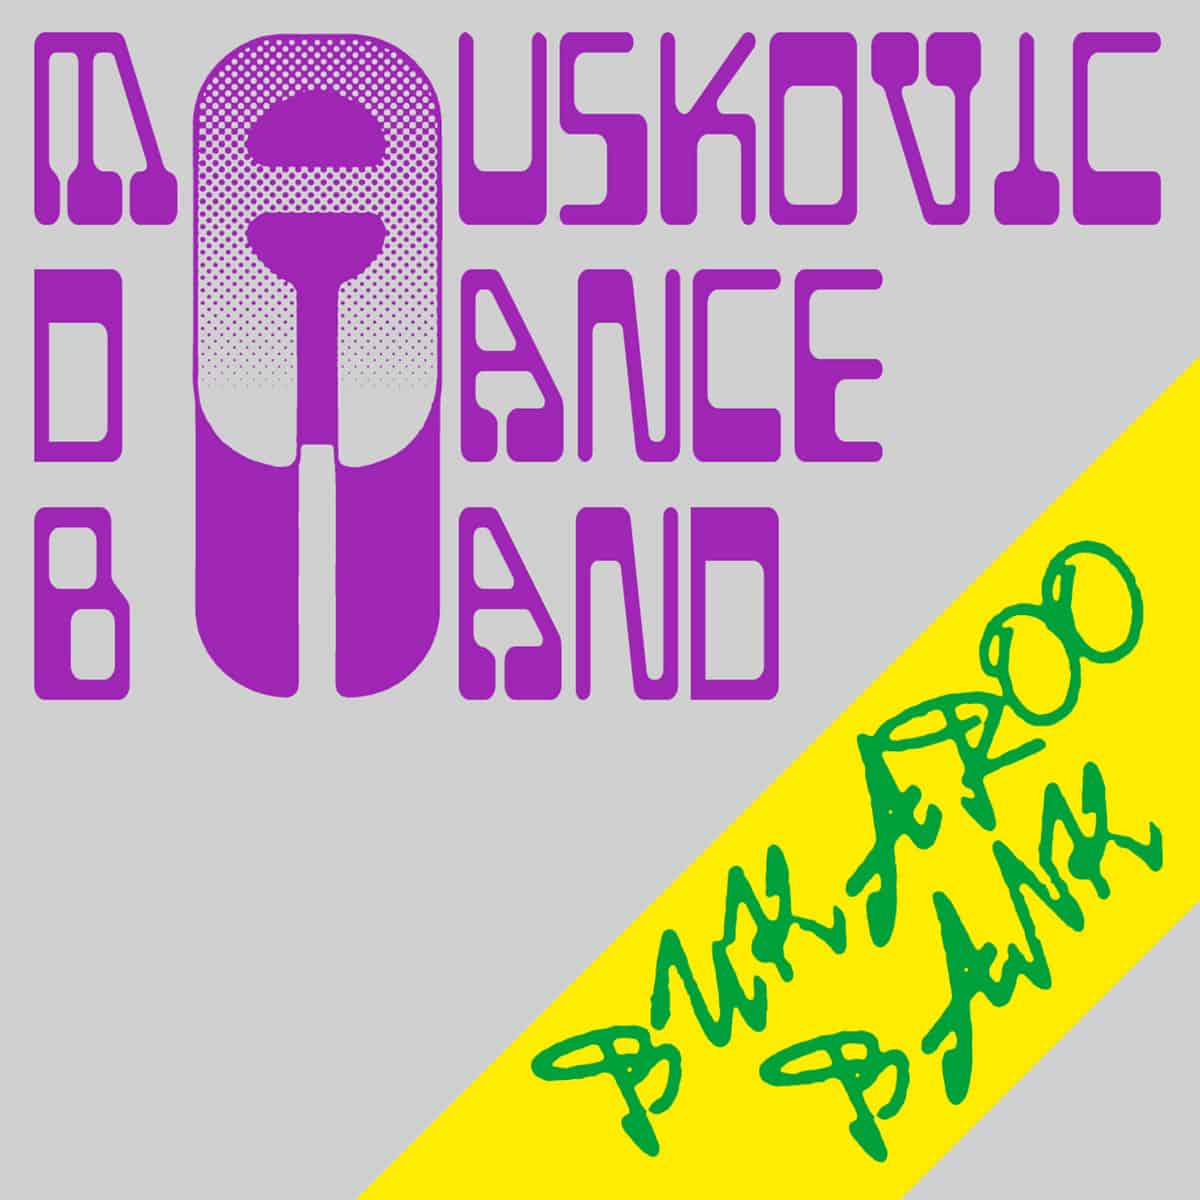 Mauskovic Dance Band - Bukaroo Bank